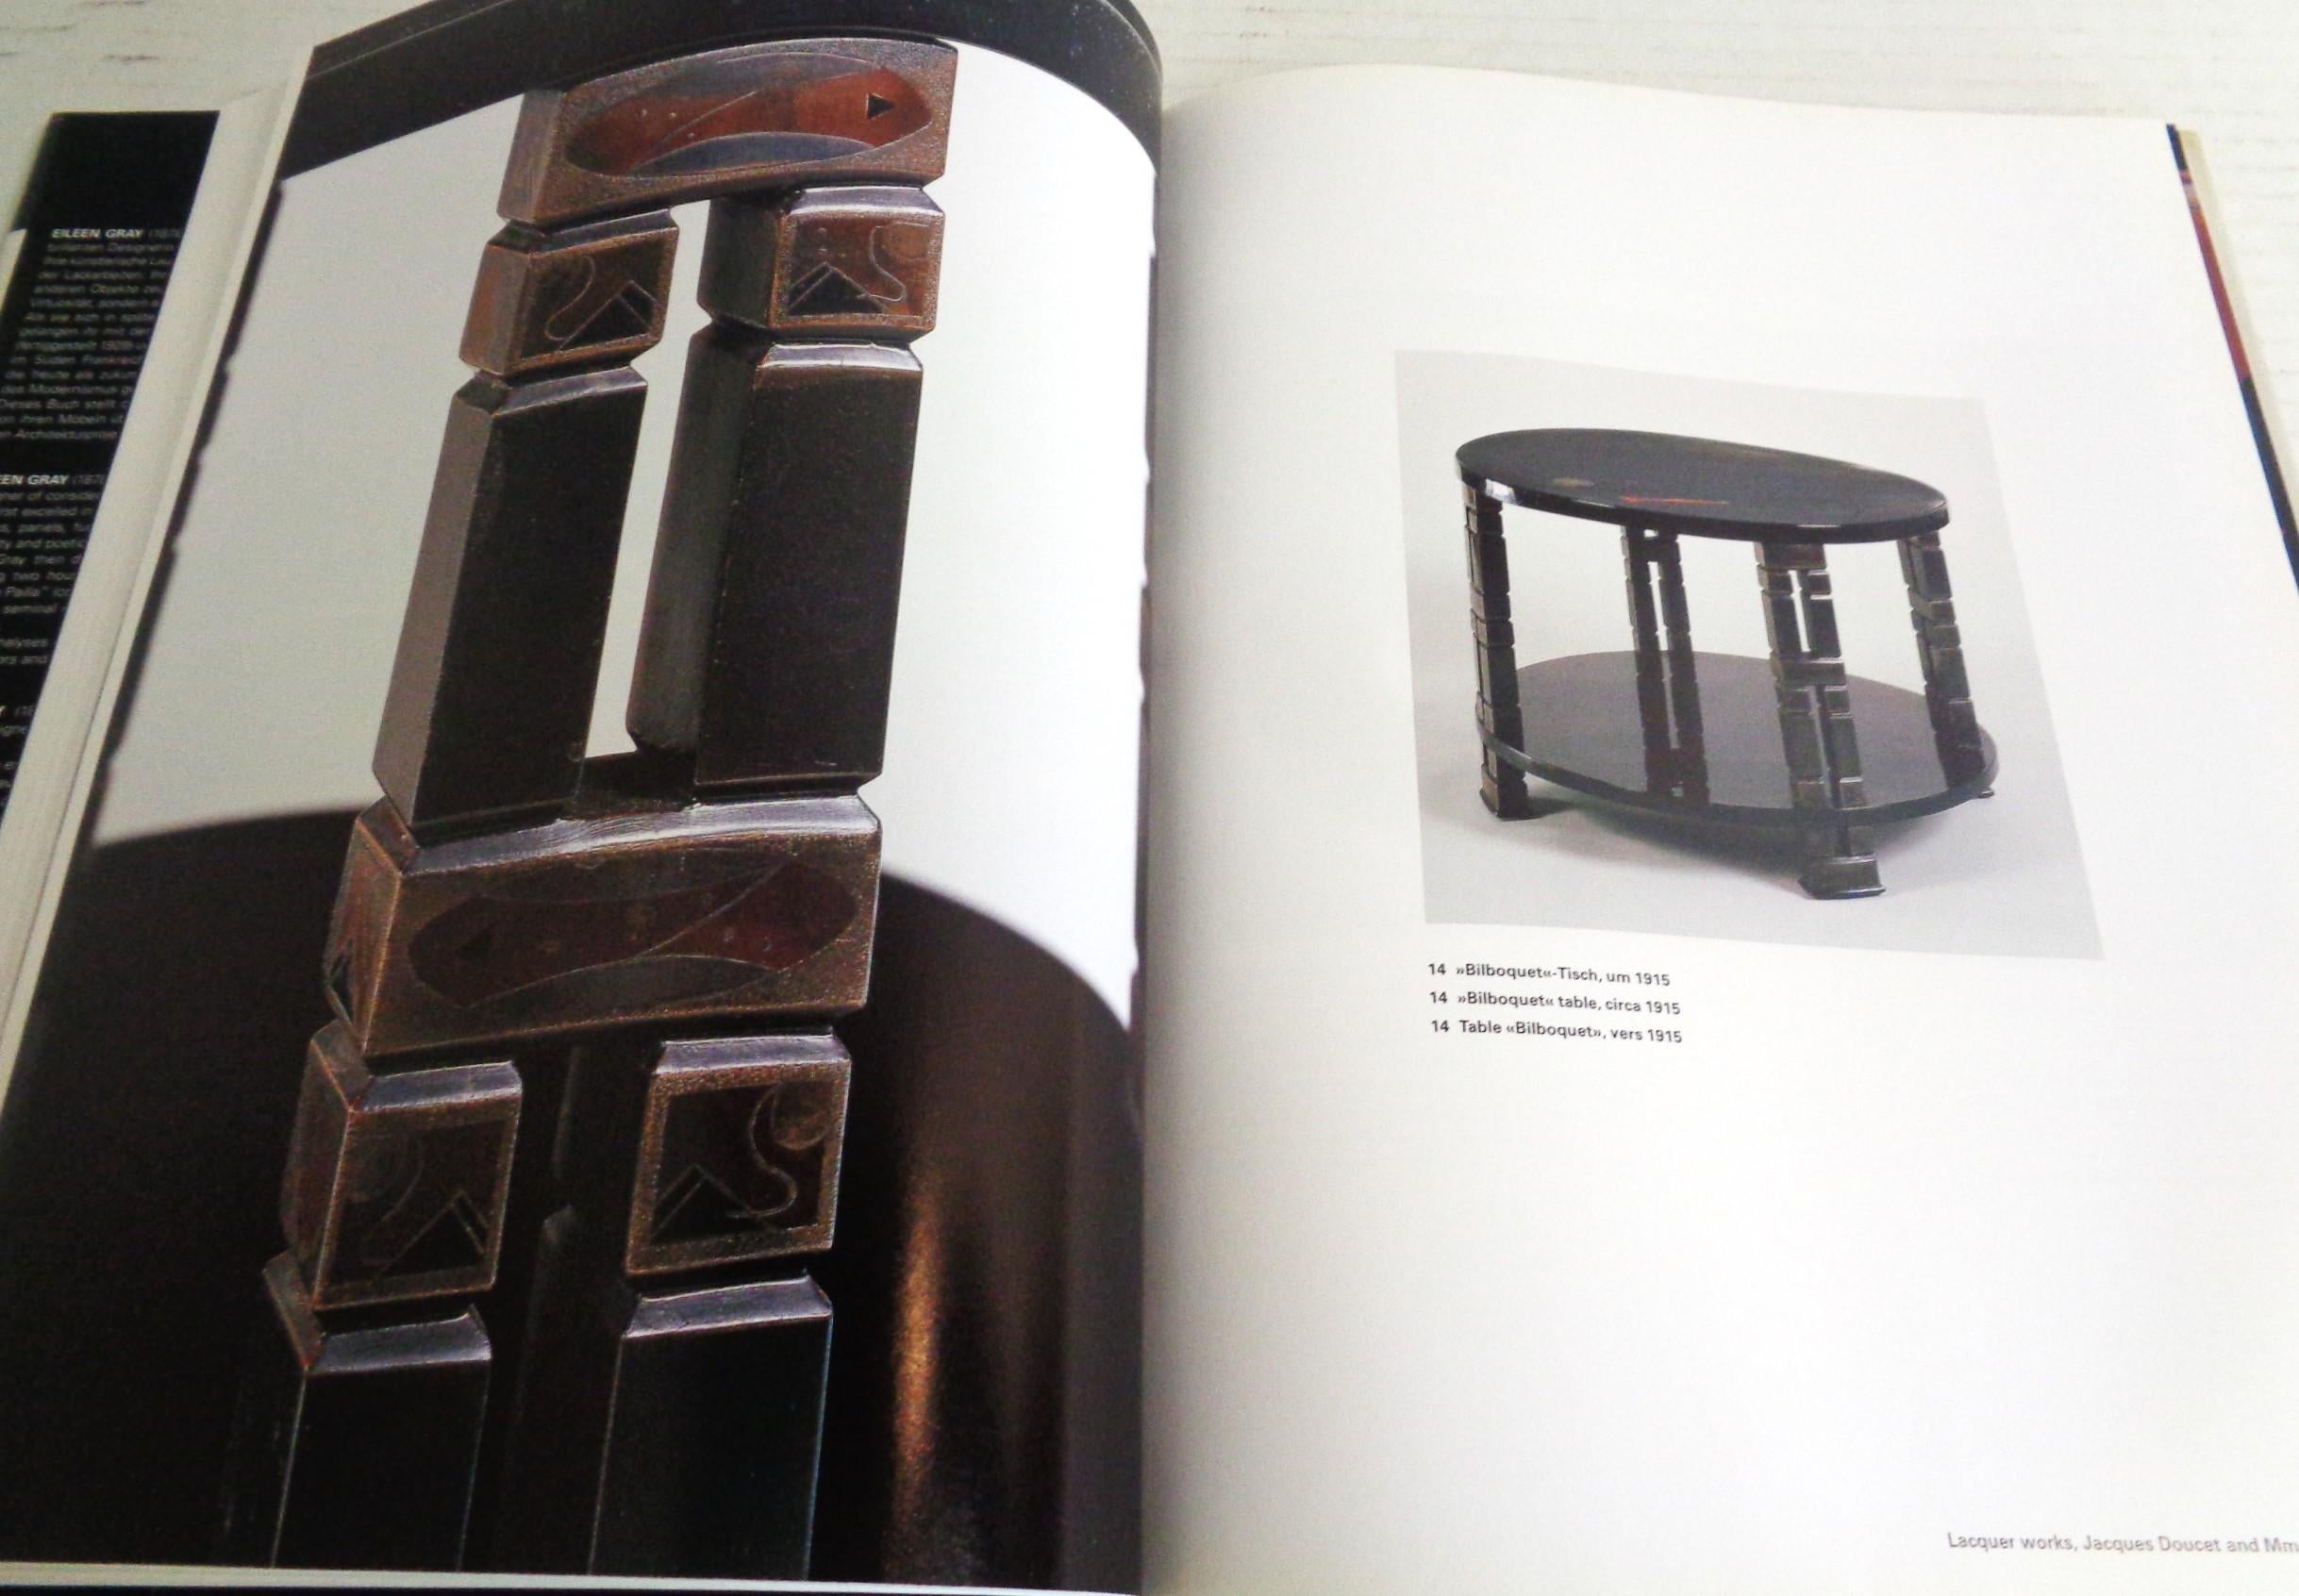 Eileen Gray - Design and Architecture - Garner, Philippe - 2006 Taschen 3